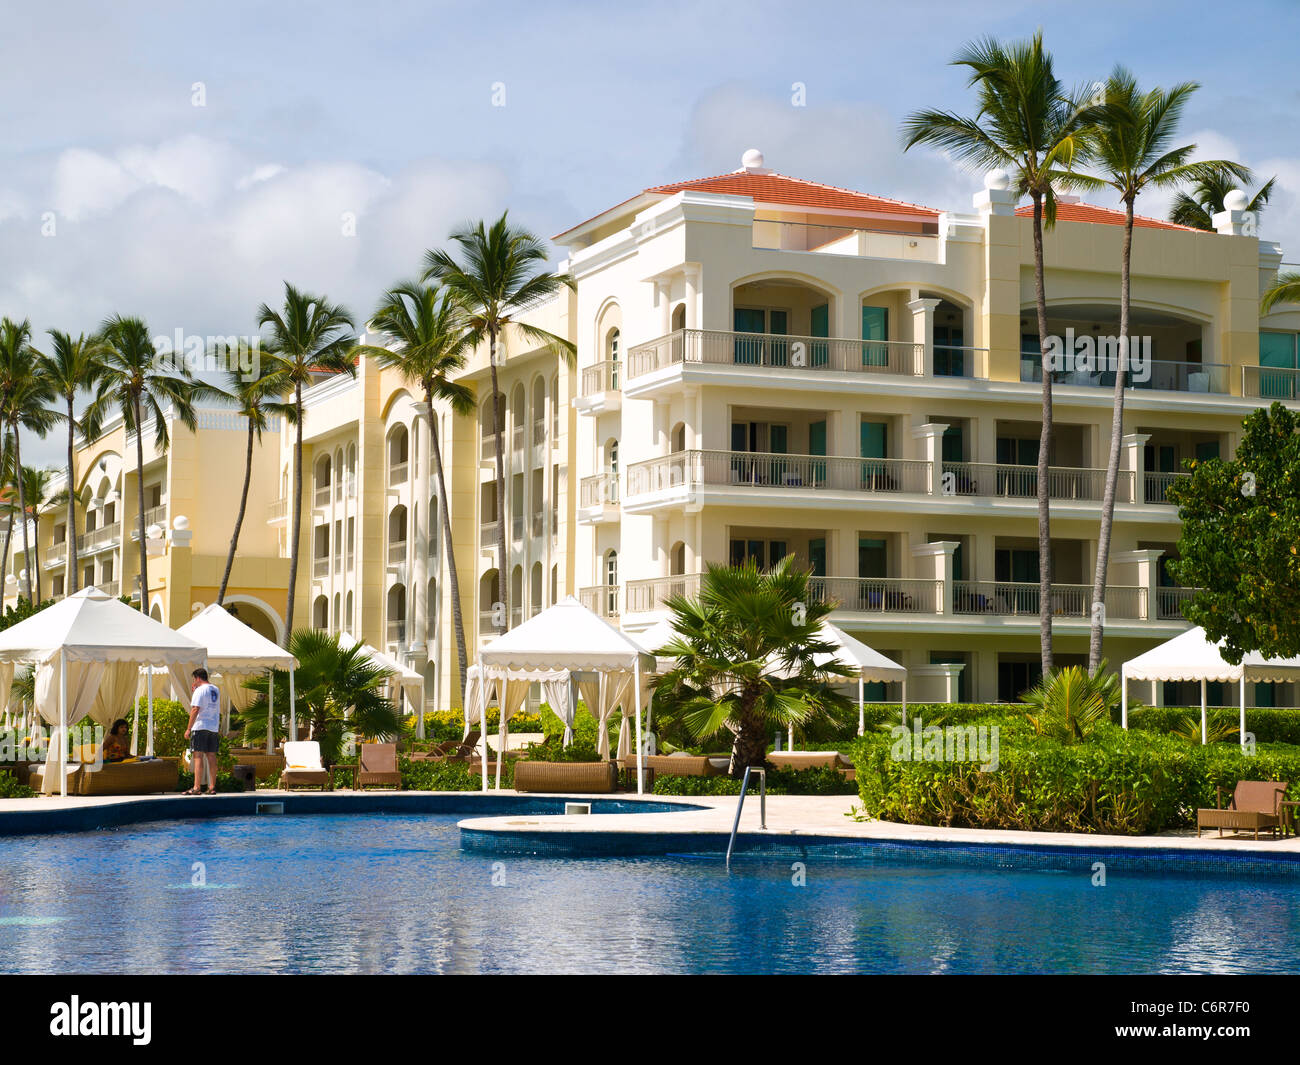 All Inclusive resort in Punta Cana, Dominican Republic Stock Photo